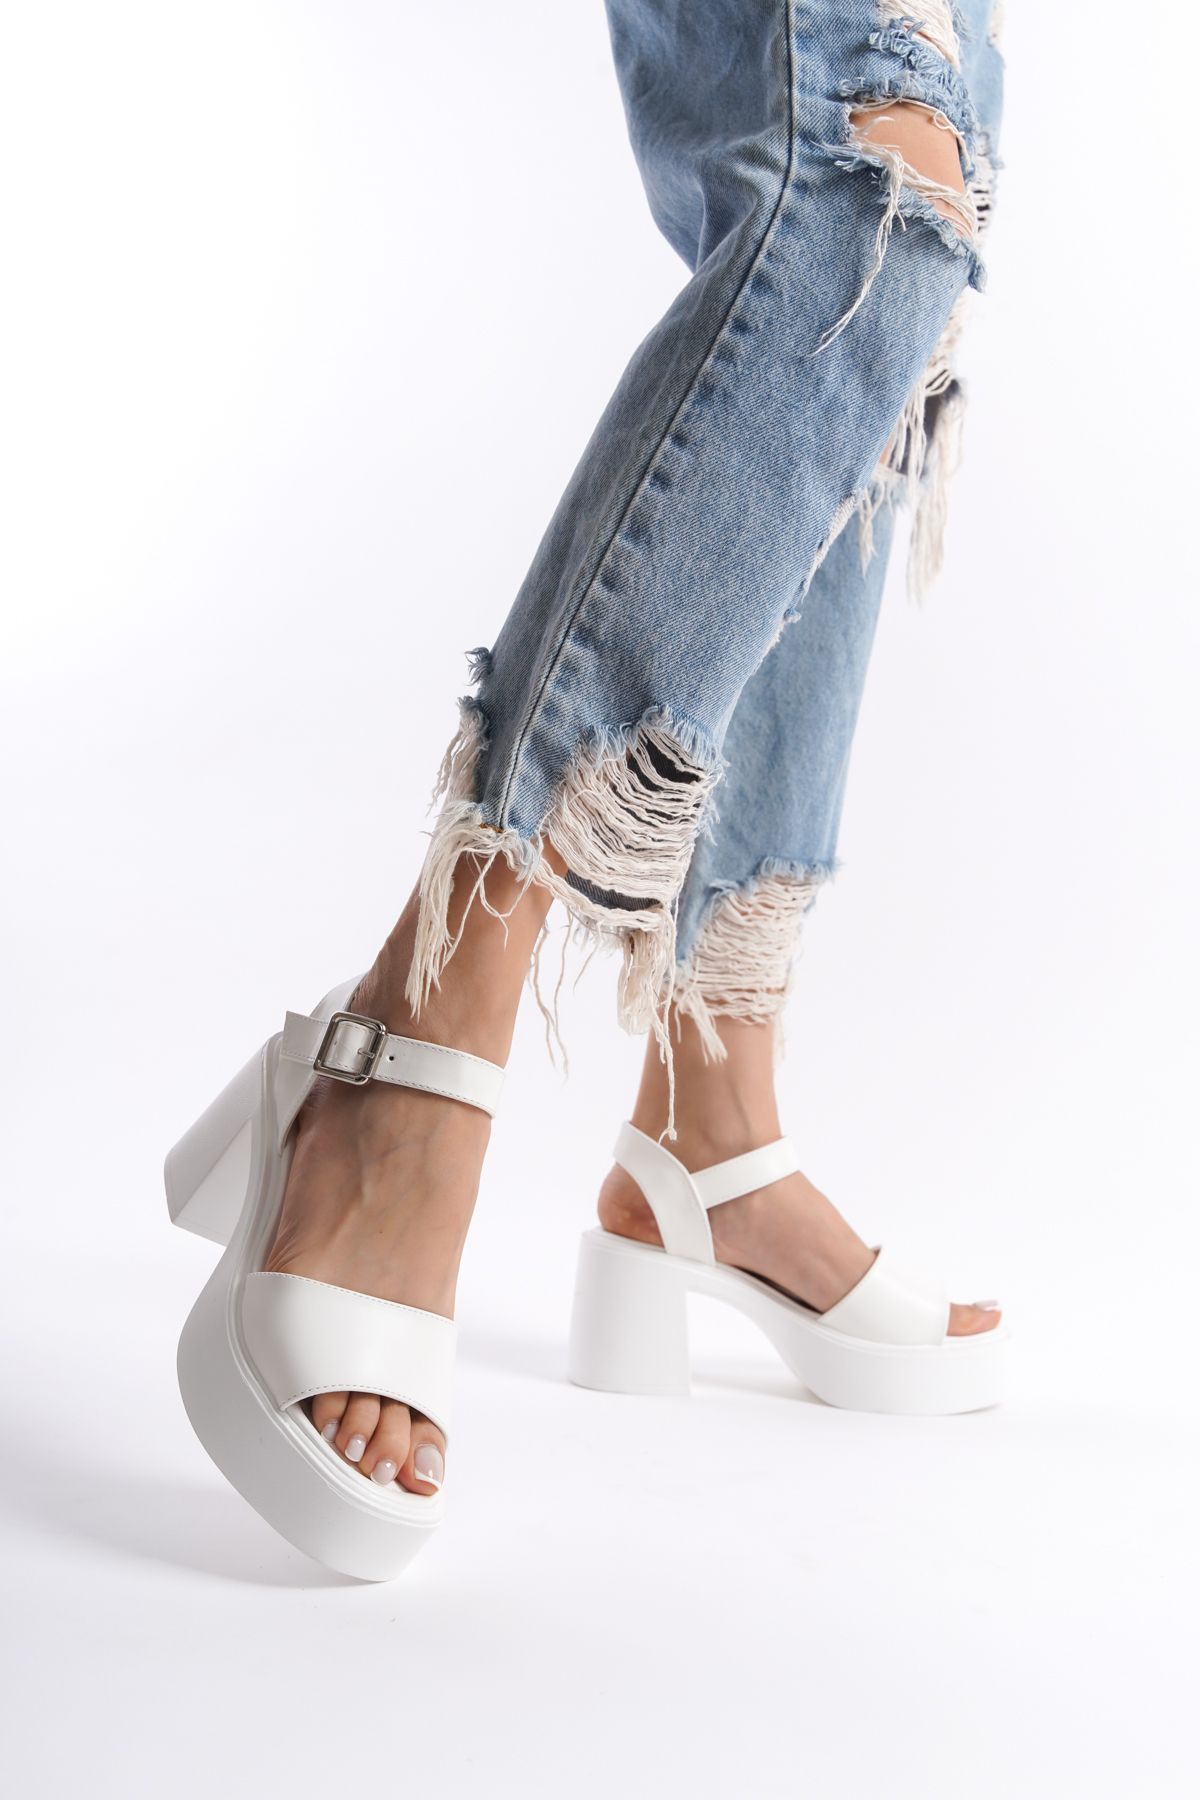 Limeo Beyaz Yüksek Yandan Tokalı Tek Şeritli Önü Açık Cilt Yazlık Kadın Dolgu Taban Sandalet Ayakkabı